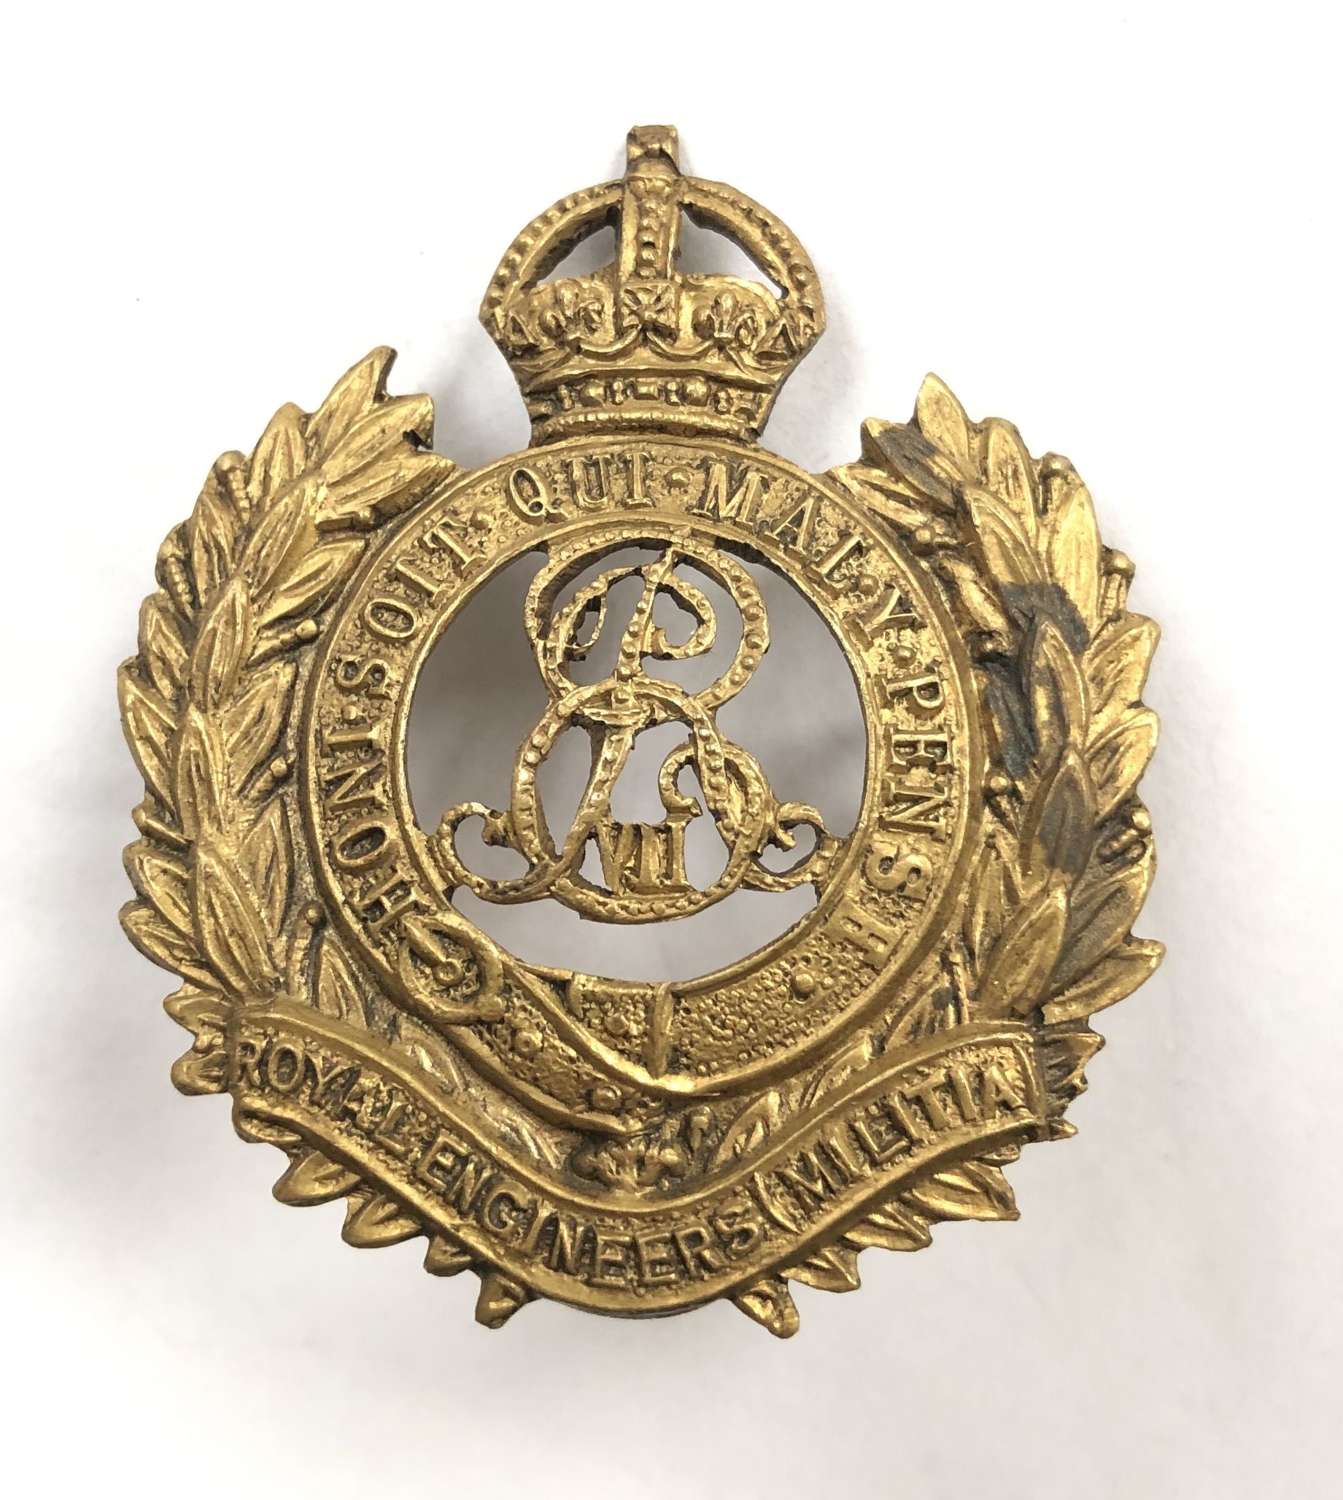 Royal Engineers Militia EDVII cap badge circa 1901-10